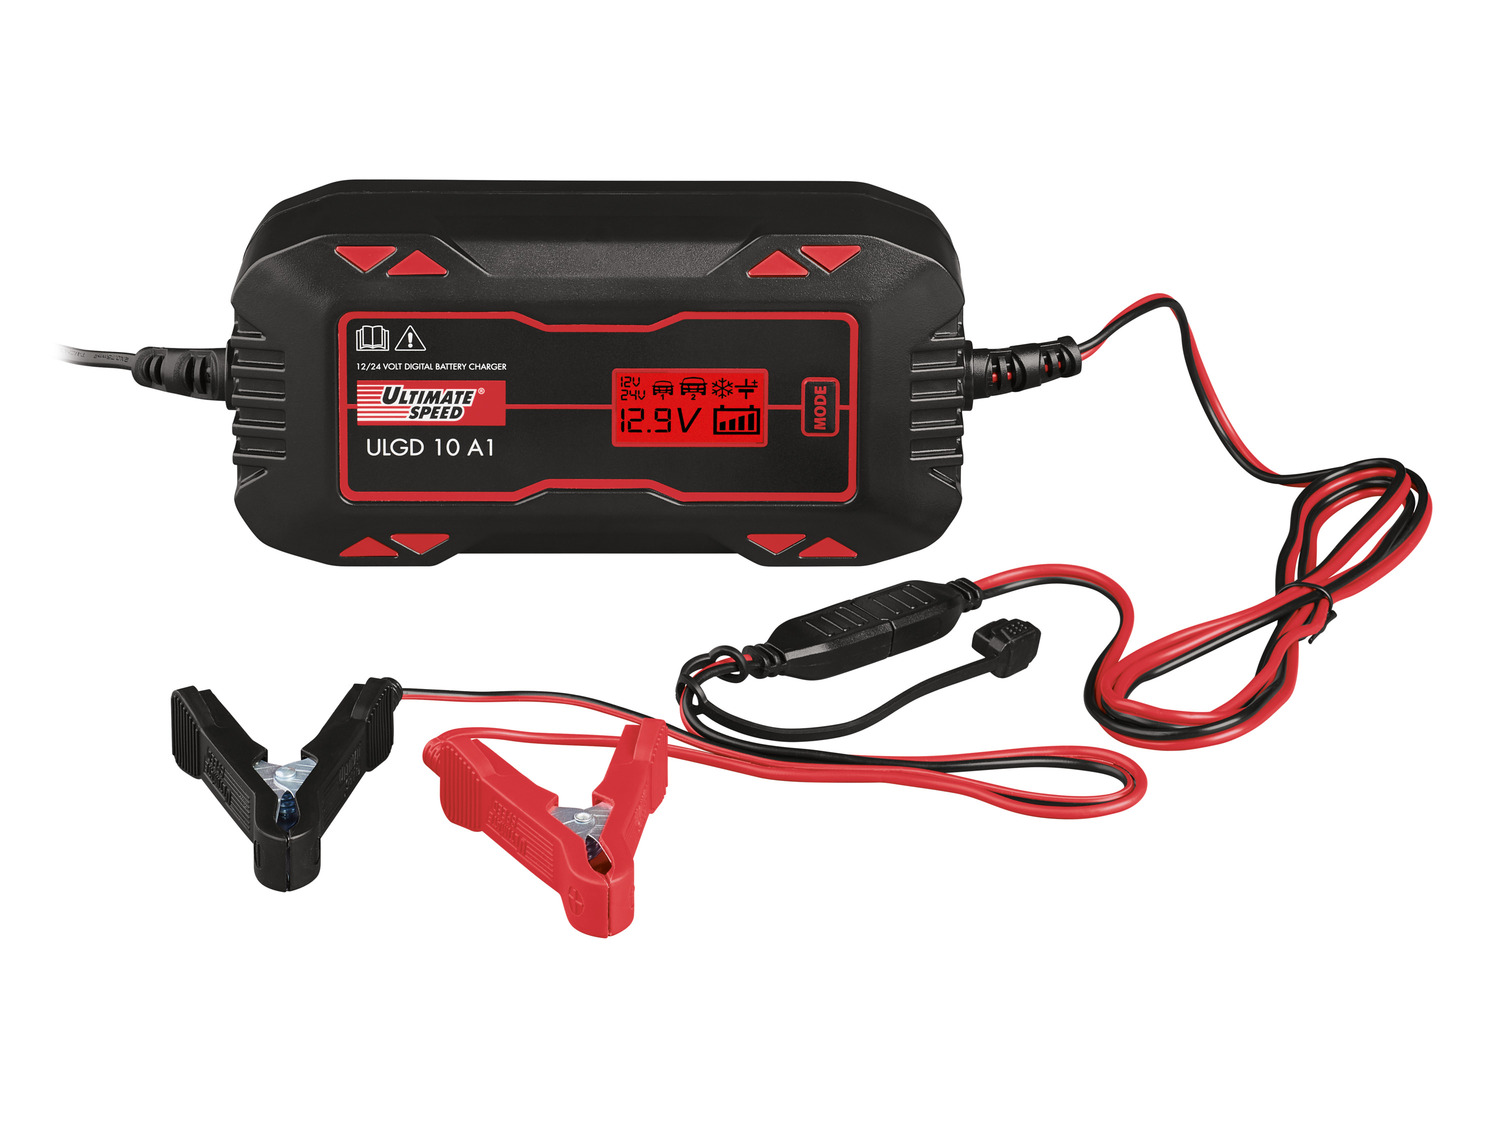 Chargeur de batterie pour voitures et motos Ultimate Speed